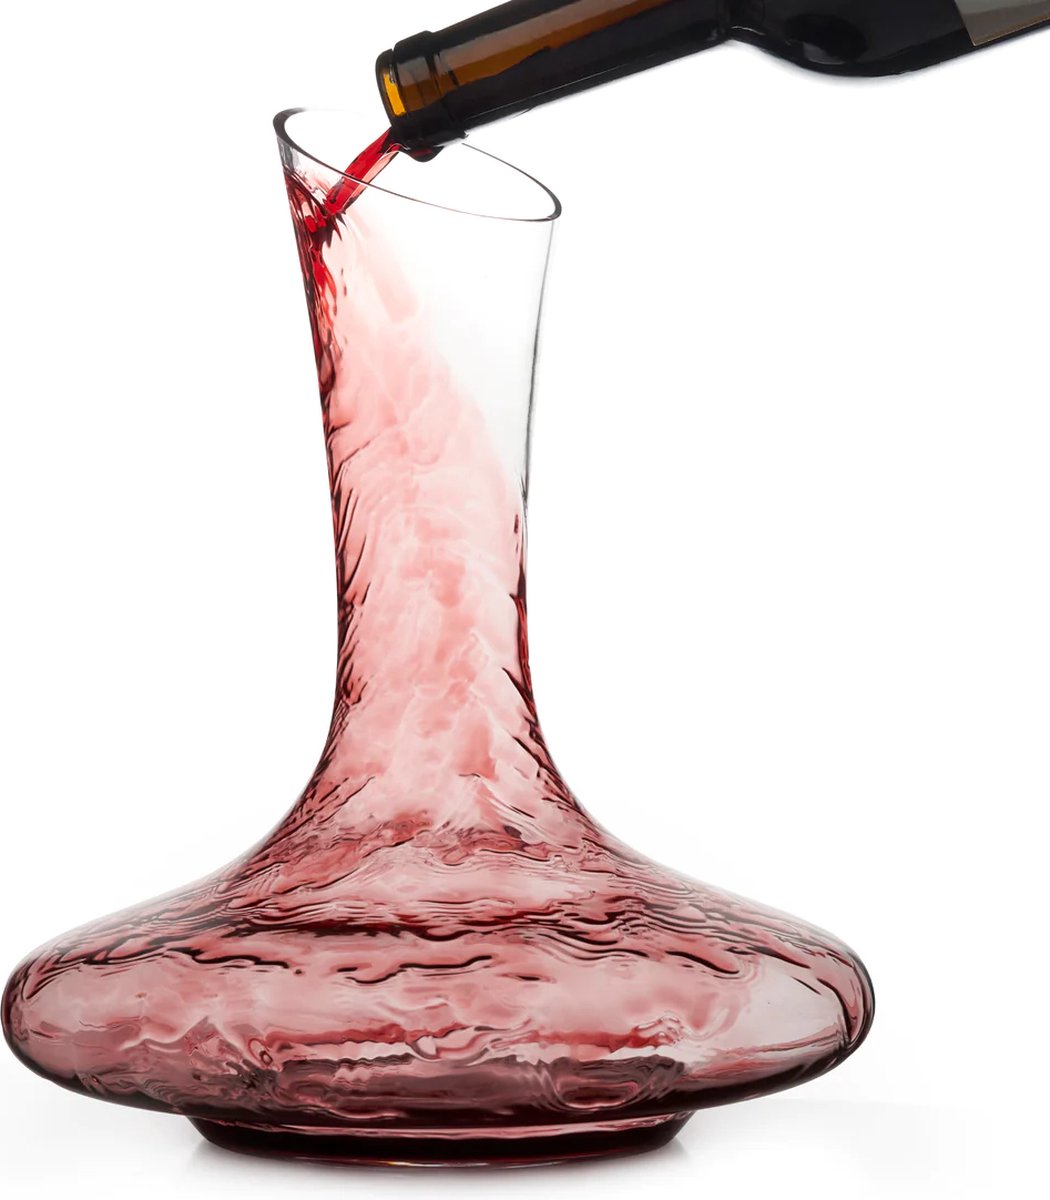 Mémoire Royal decanter - Wijn decanter - 1.7L - Luxe cadeau verpakking - Incl. accessoires - Incl. RVS schoonmaakparels - Incl. Kurkbal - 100% loodvrij Handgeblazen glas - Luxe wijn karaf - Luxe decanteer karaf - Wijn Accessoires